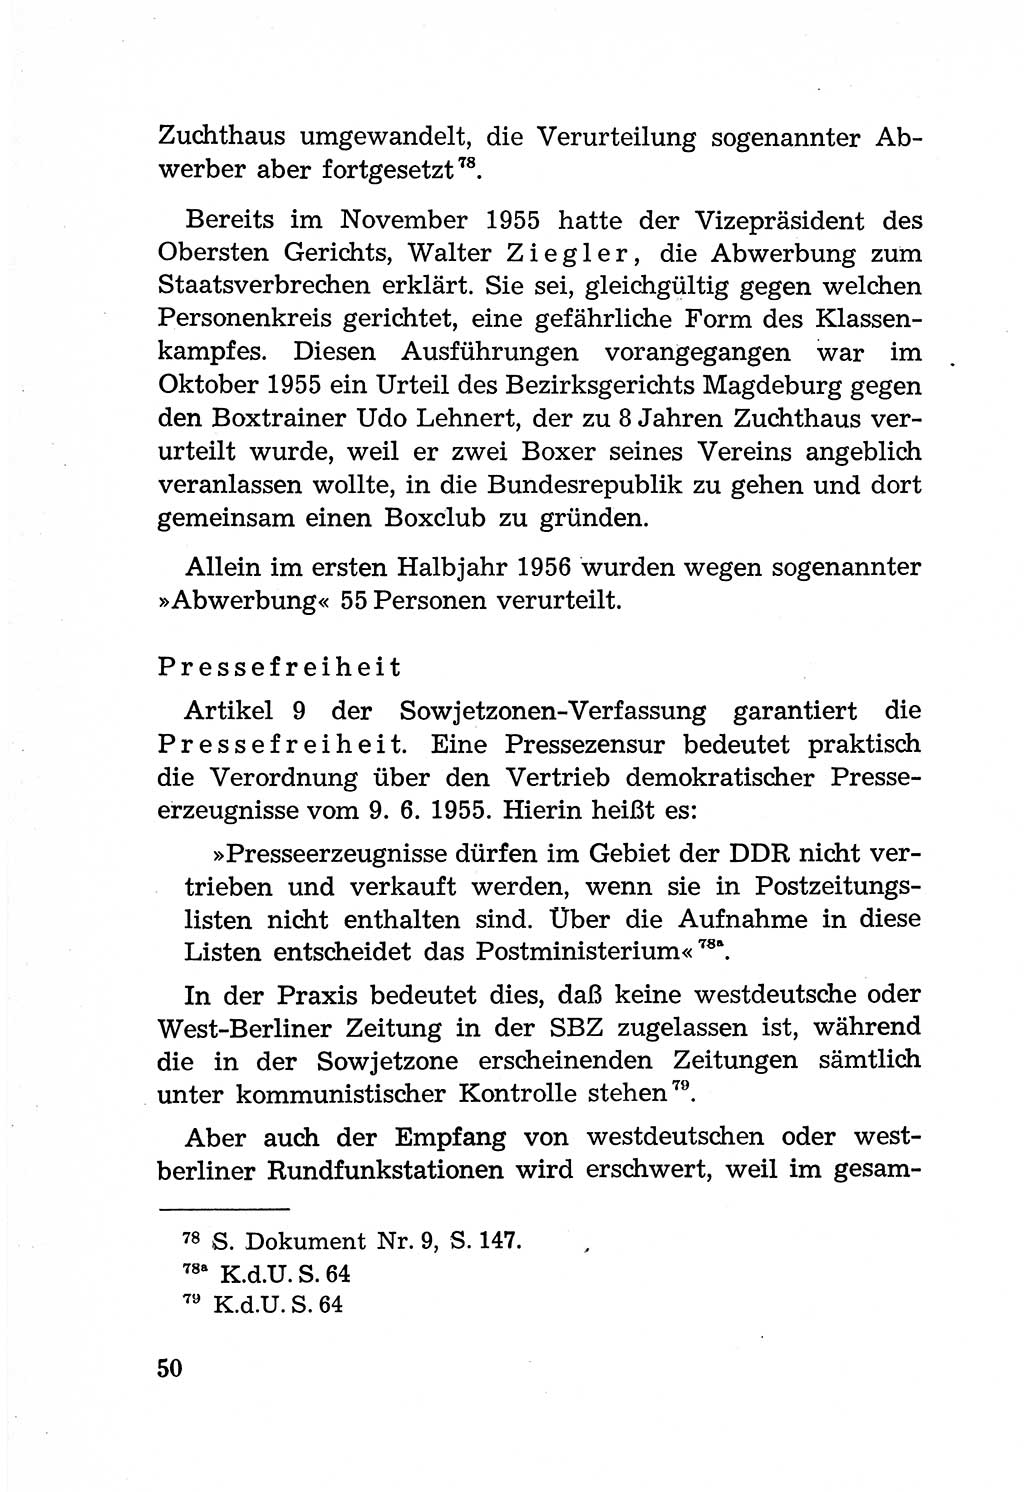 Rechtsstaat in zweierlei Hinsicht, UntersuchungsausschuÃŸ freiheitlicher Juristen (UfJ) [Bundesrepublik Deutschland (BRD)] 1956, Seite 50 (R.-St. UfJ BRD 1956, S. 50)